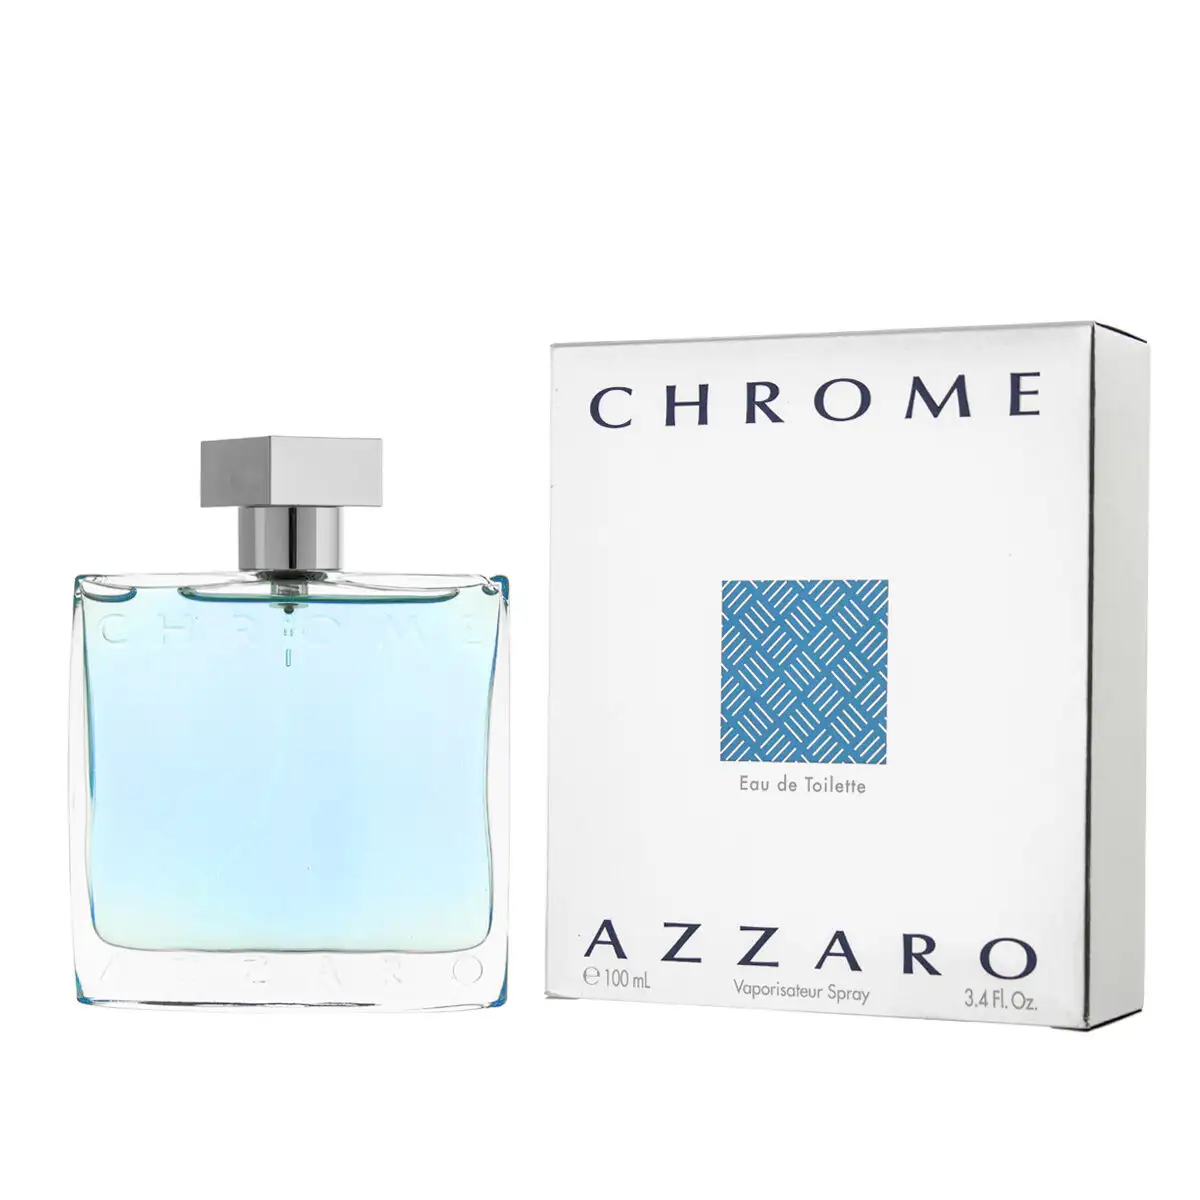 Parfum homme azzaro edt chrome 100 ml_8057. DIAYTAR SENEGAL - Là où le Shopping devient une Fête des Sens. Plongez dans notre univers et choisissez des produits qui éveillent votre goût pour l'esthétique et l'authenticité.